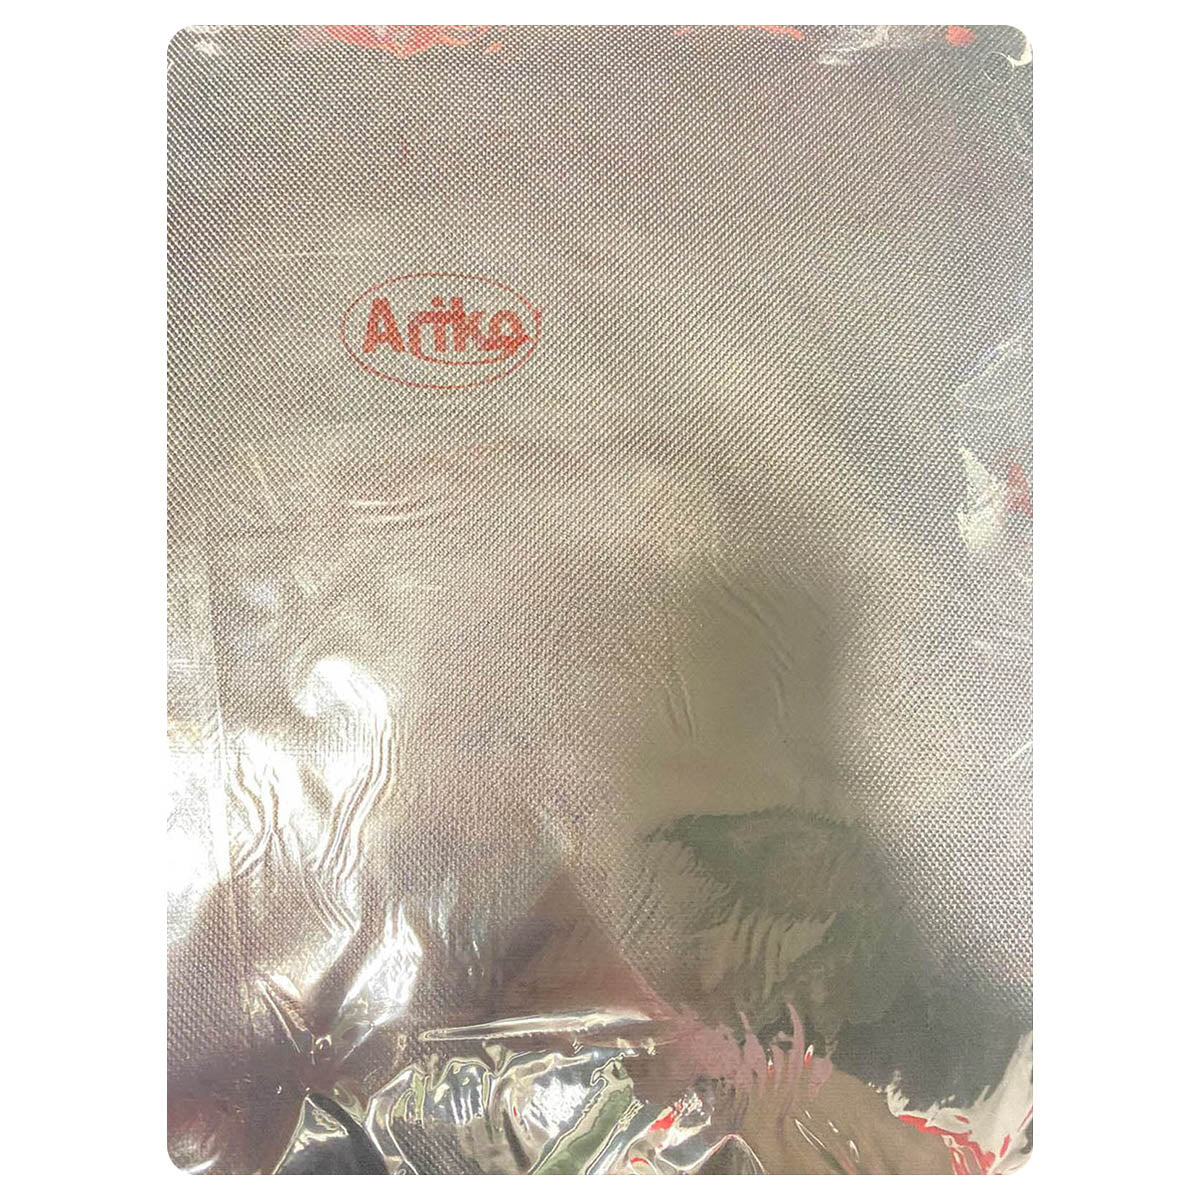 Ariko Grillabdeckung - Abdeckung für Gartengrill - Schützend - Kompakt - 147 x 61 x 122 cm